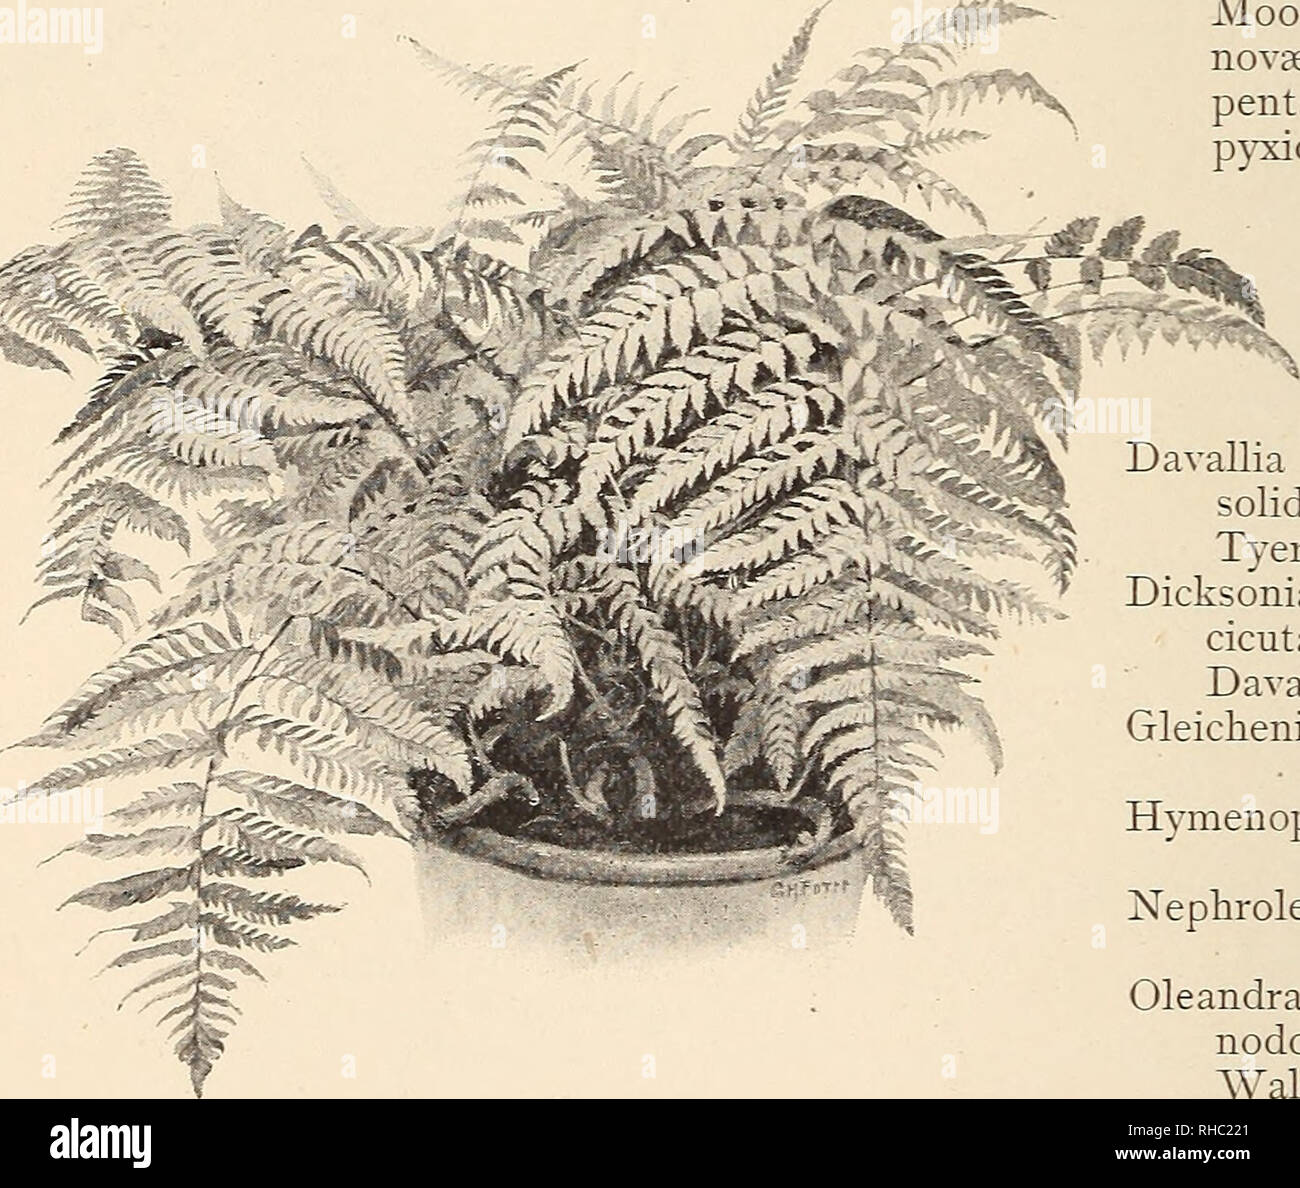 . The Book of gardening; a handbook of horticulture. Gardening; Floriculture. 562 THE BOOK OF GARDENING. Nephrolepis acuta, Polypodium lachnopus. Bausei. Paradisae. cordifolia. â¢ sub-auriculatum (Fig. 341). davallioides.* sub-petiolatum. d. furcans.* vermcosum.* Duffii.* Pteris moluccana.* exaltata. Woodwardia orientalis. pluma. radicans. Polypodium, appendiculatum. r. cristata. Those marked * require stove tejnperature. Ferns of Climbing Habit. Lygodium dichotomum.* Lygodium scandens (Fig. 337). japonicum. venustum.* palmatum. volubile.* pinnatifidum.* Those marked * require stove temperatur Stock Photo